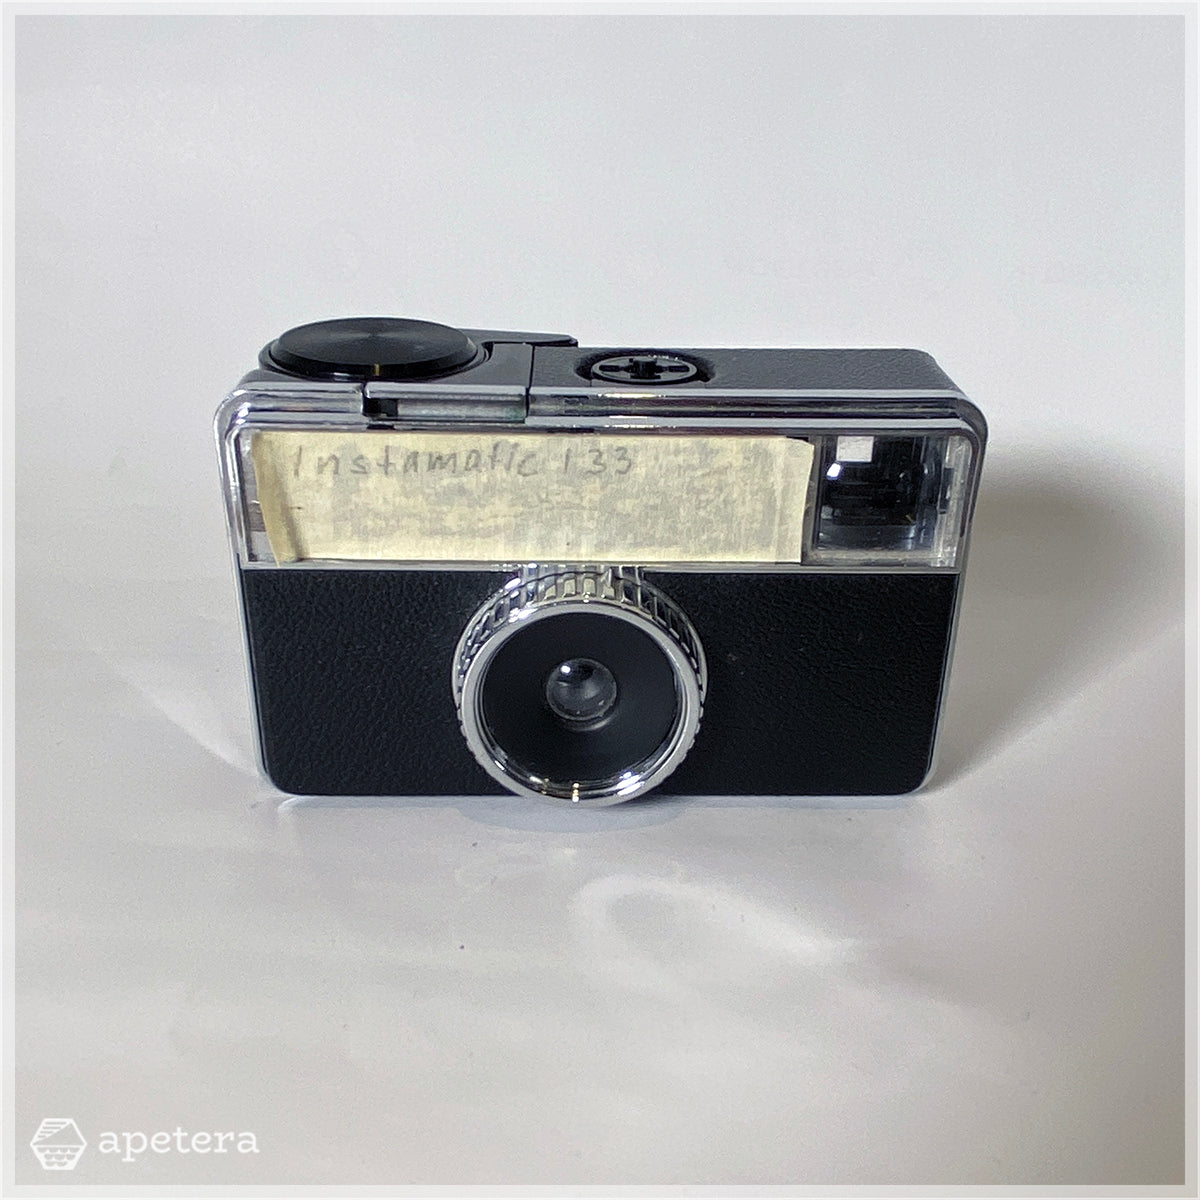 カメラ / Instamatic 133 / Kodak / ドイツ